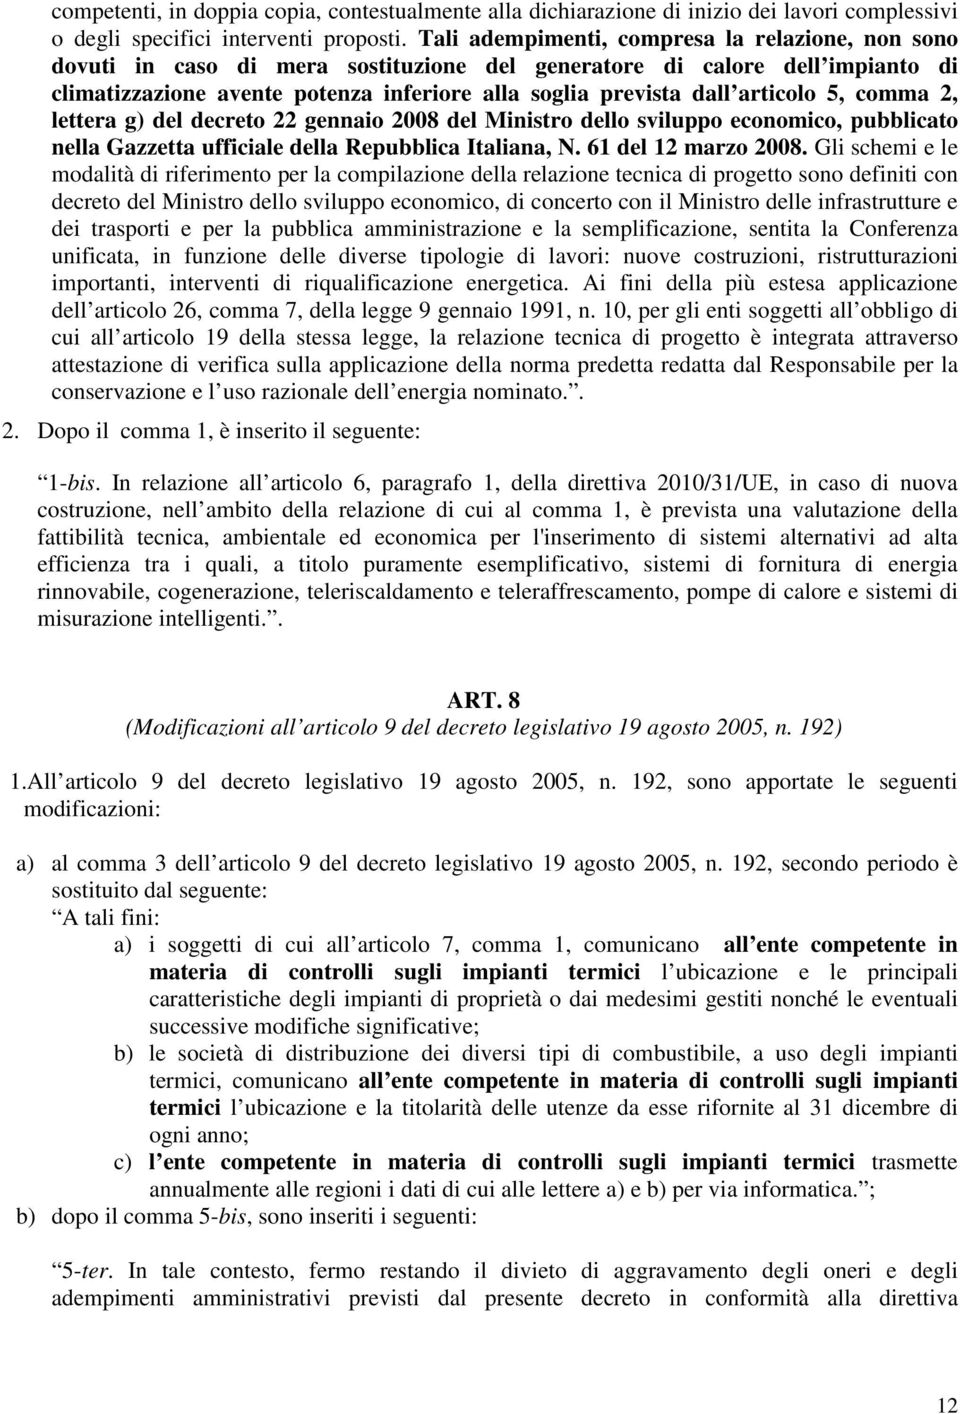 articolo 5, comma 2, lettera g) del decreto 22 gennaio 2008 del Ministro dello sviluppo economico, pubblicato nella Gazzetta ufficiale della Repubblica Italiana, N. 61 del 12 marzo 2008.